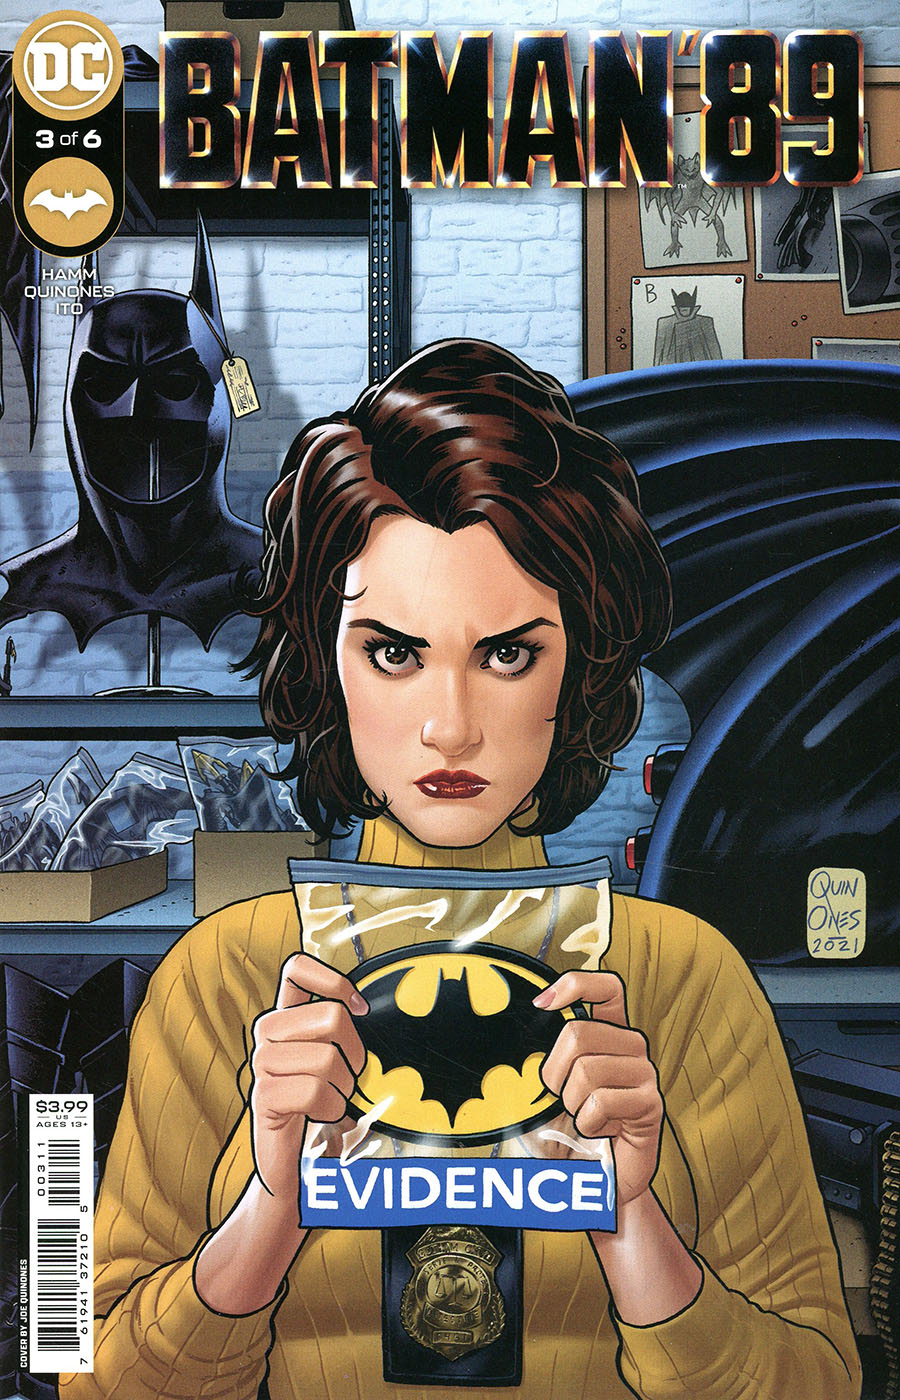 Batman 89 #3 Cover A Regular Joe Quinones Cover